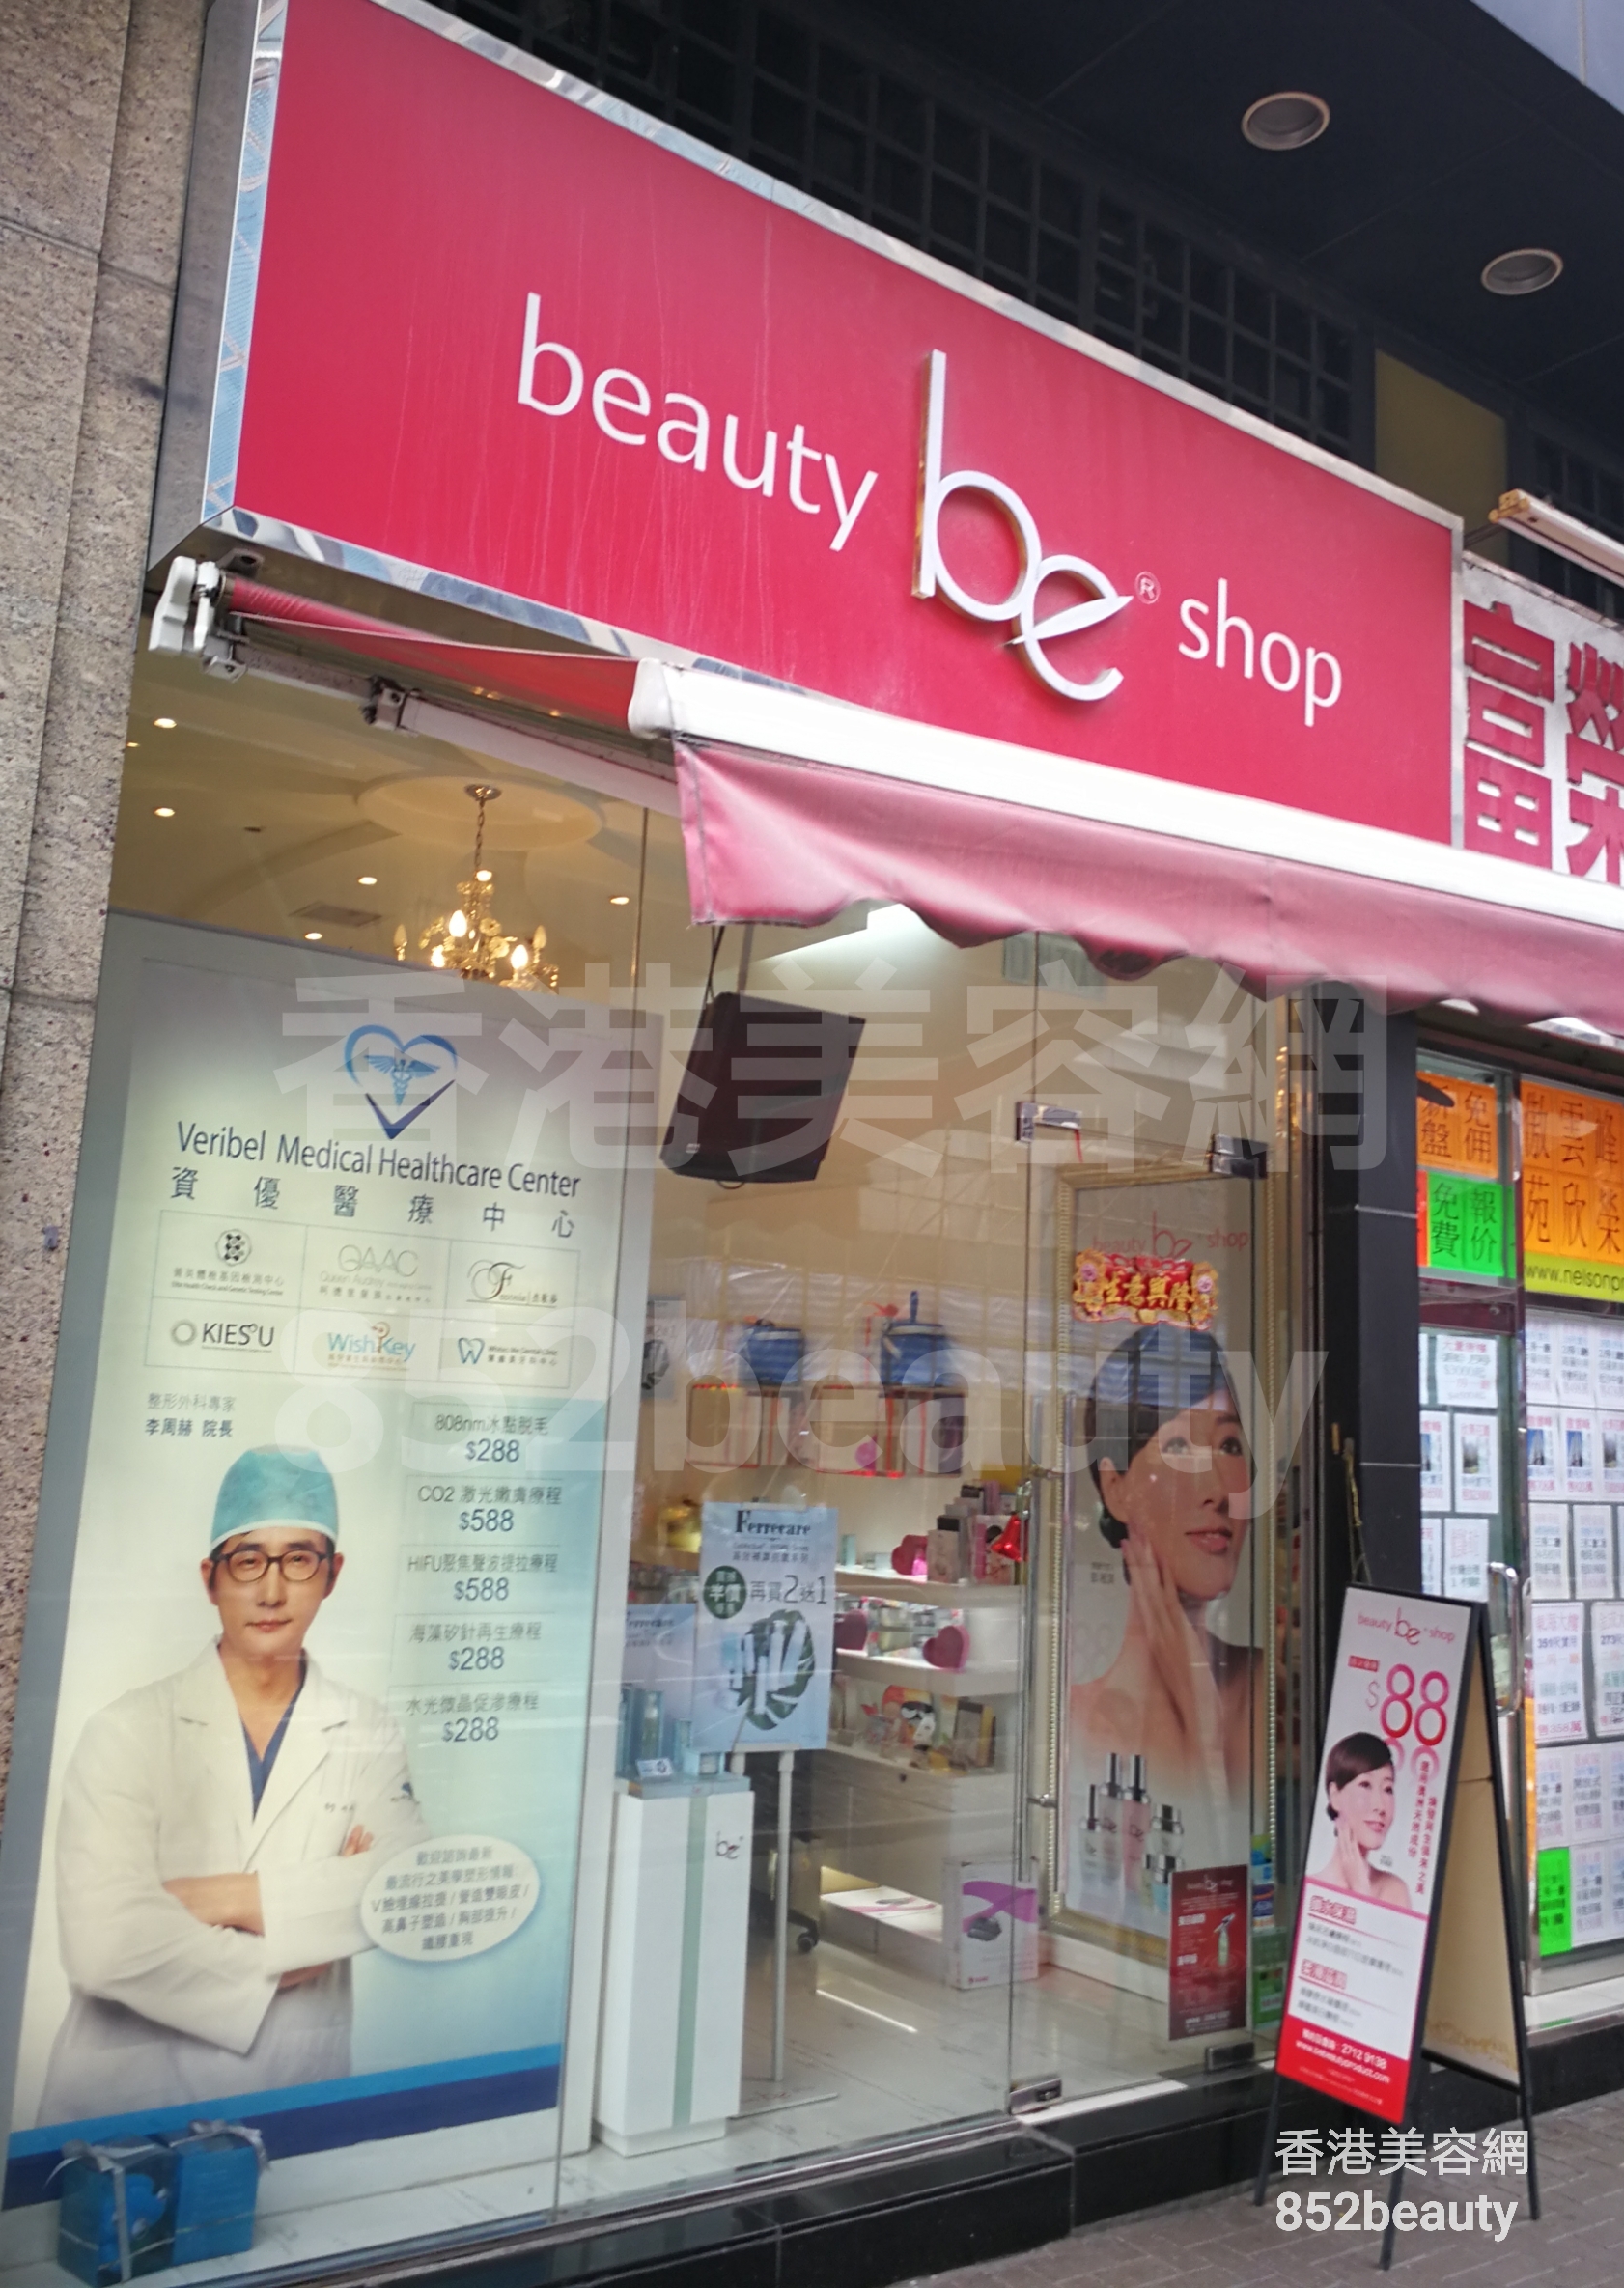 美容院 Beauty Salon: be beauty shop (金都豪庭)